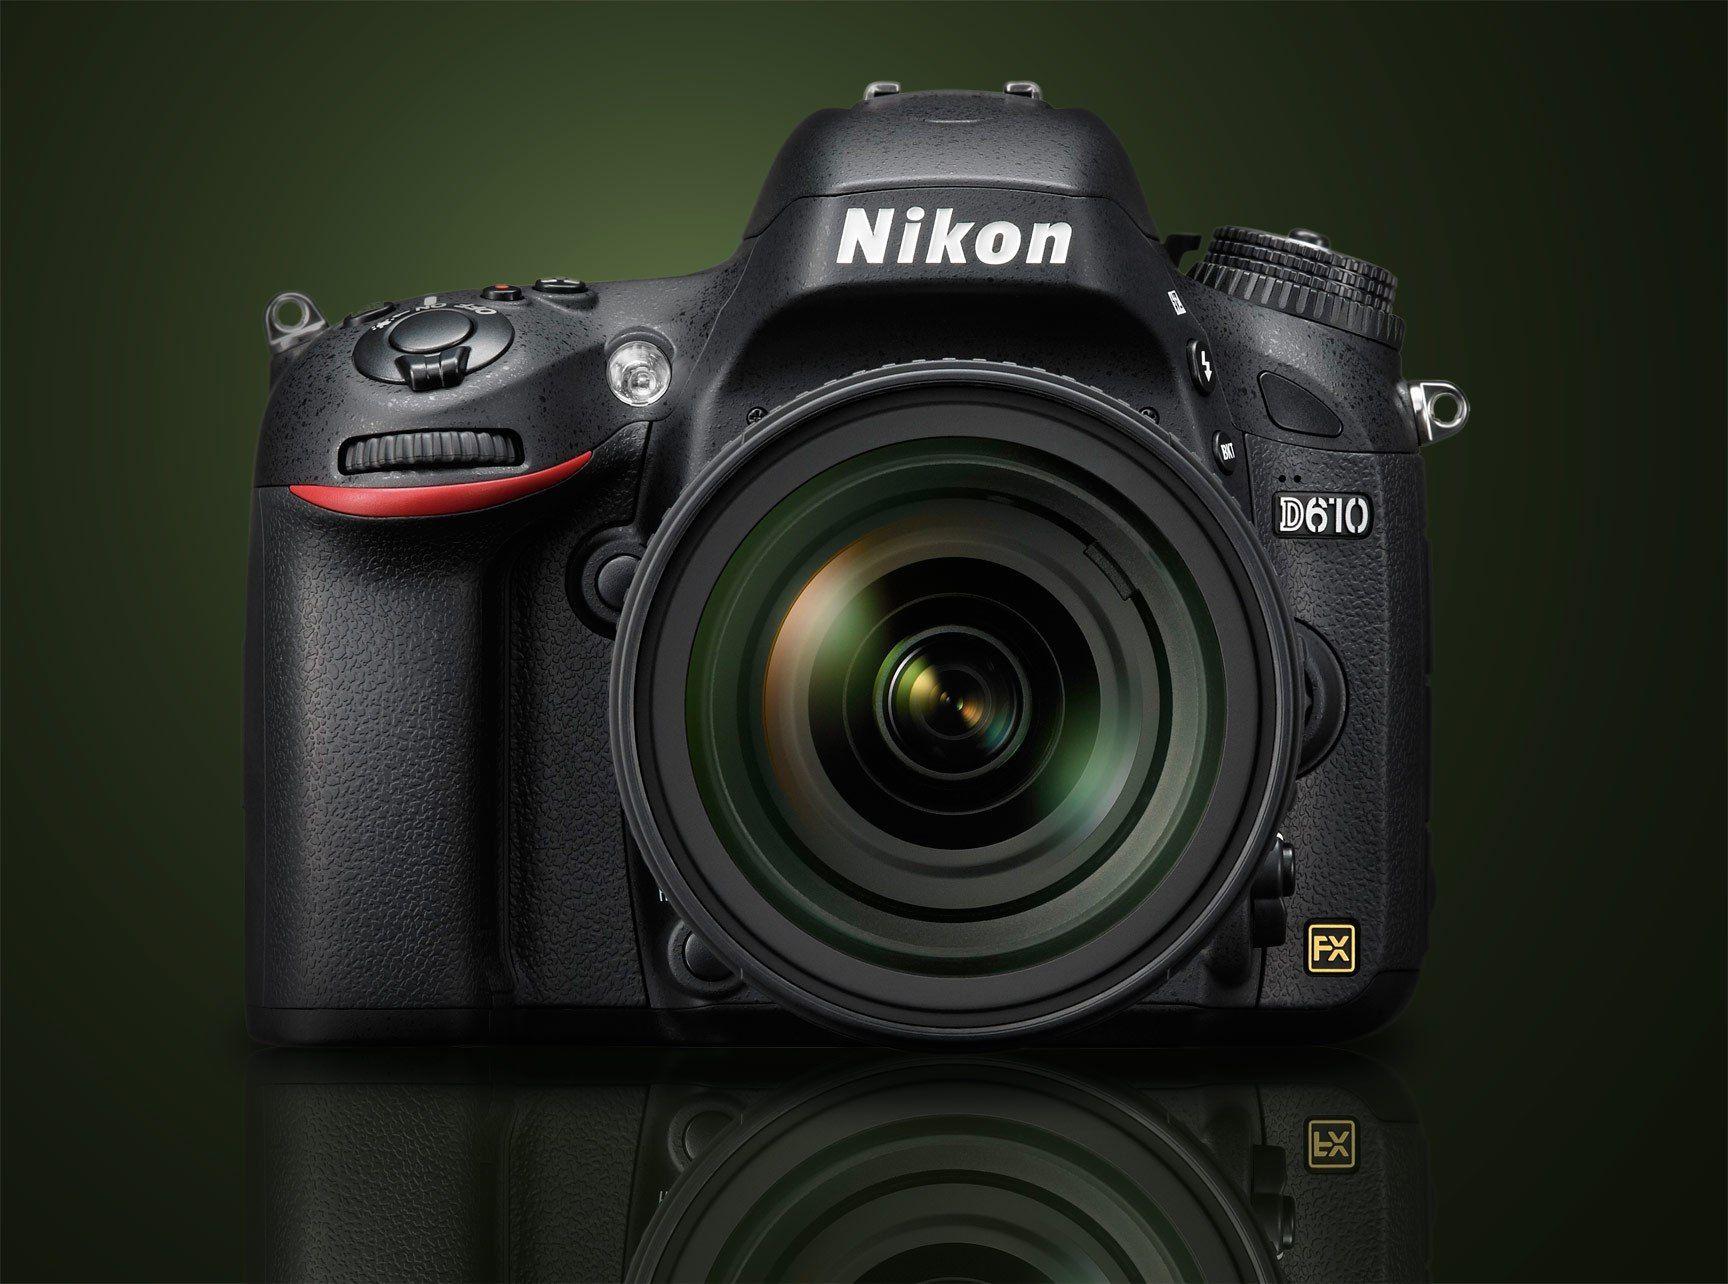 Nikon D610 Black Friday & Cyber Monday Deals & Sales. Camera